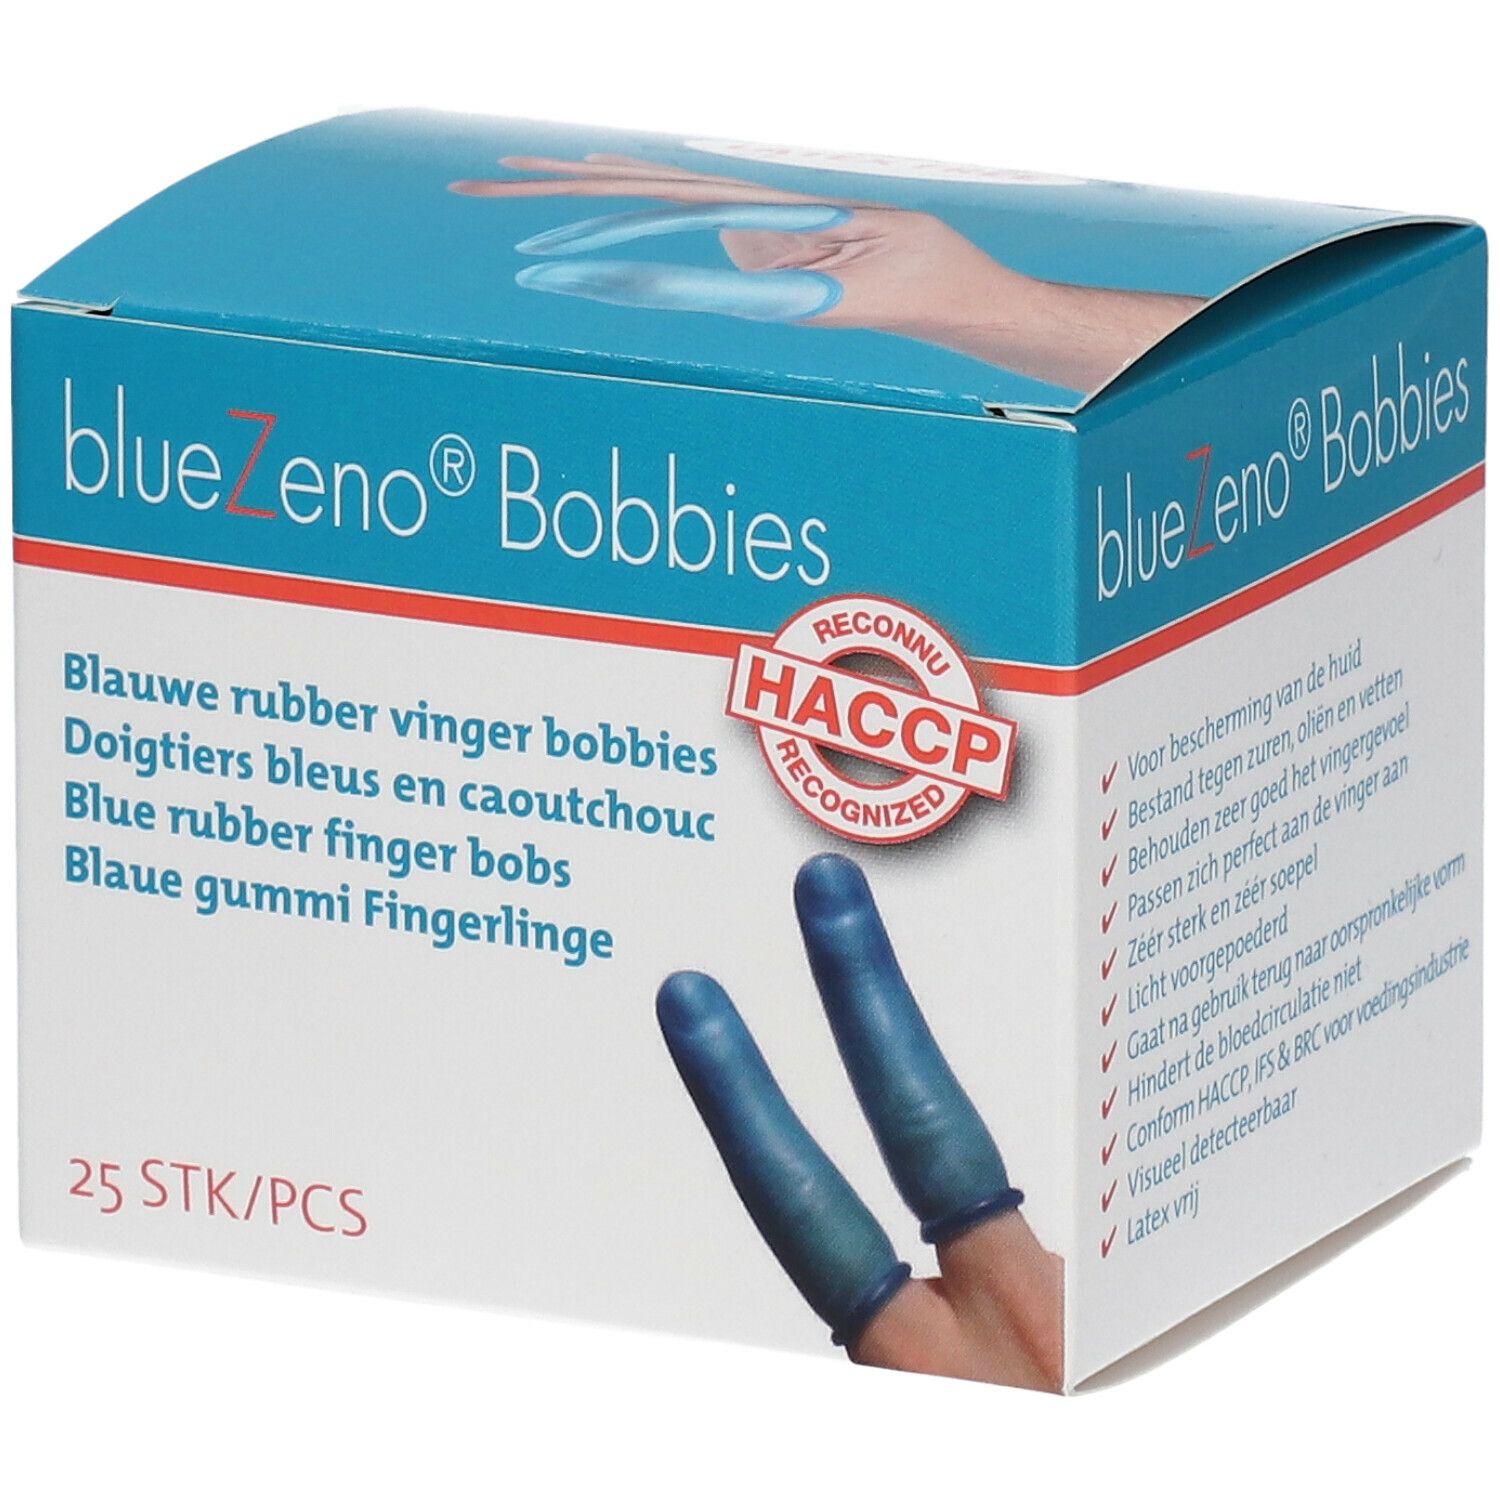 BlueZeno® Bobbies Doigtiers bleus en caoutchouc